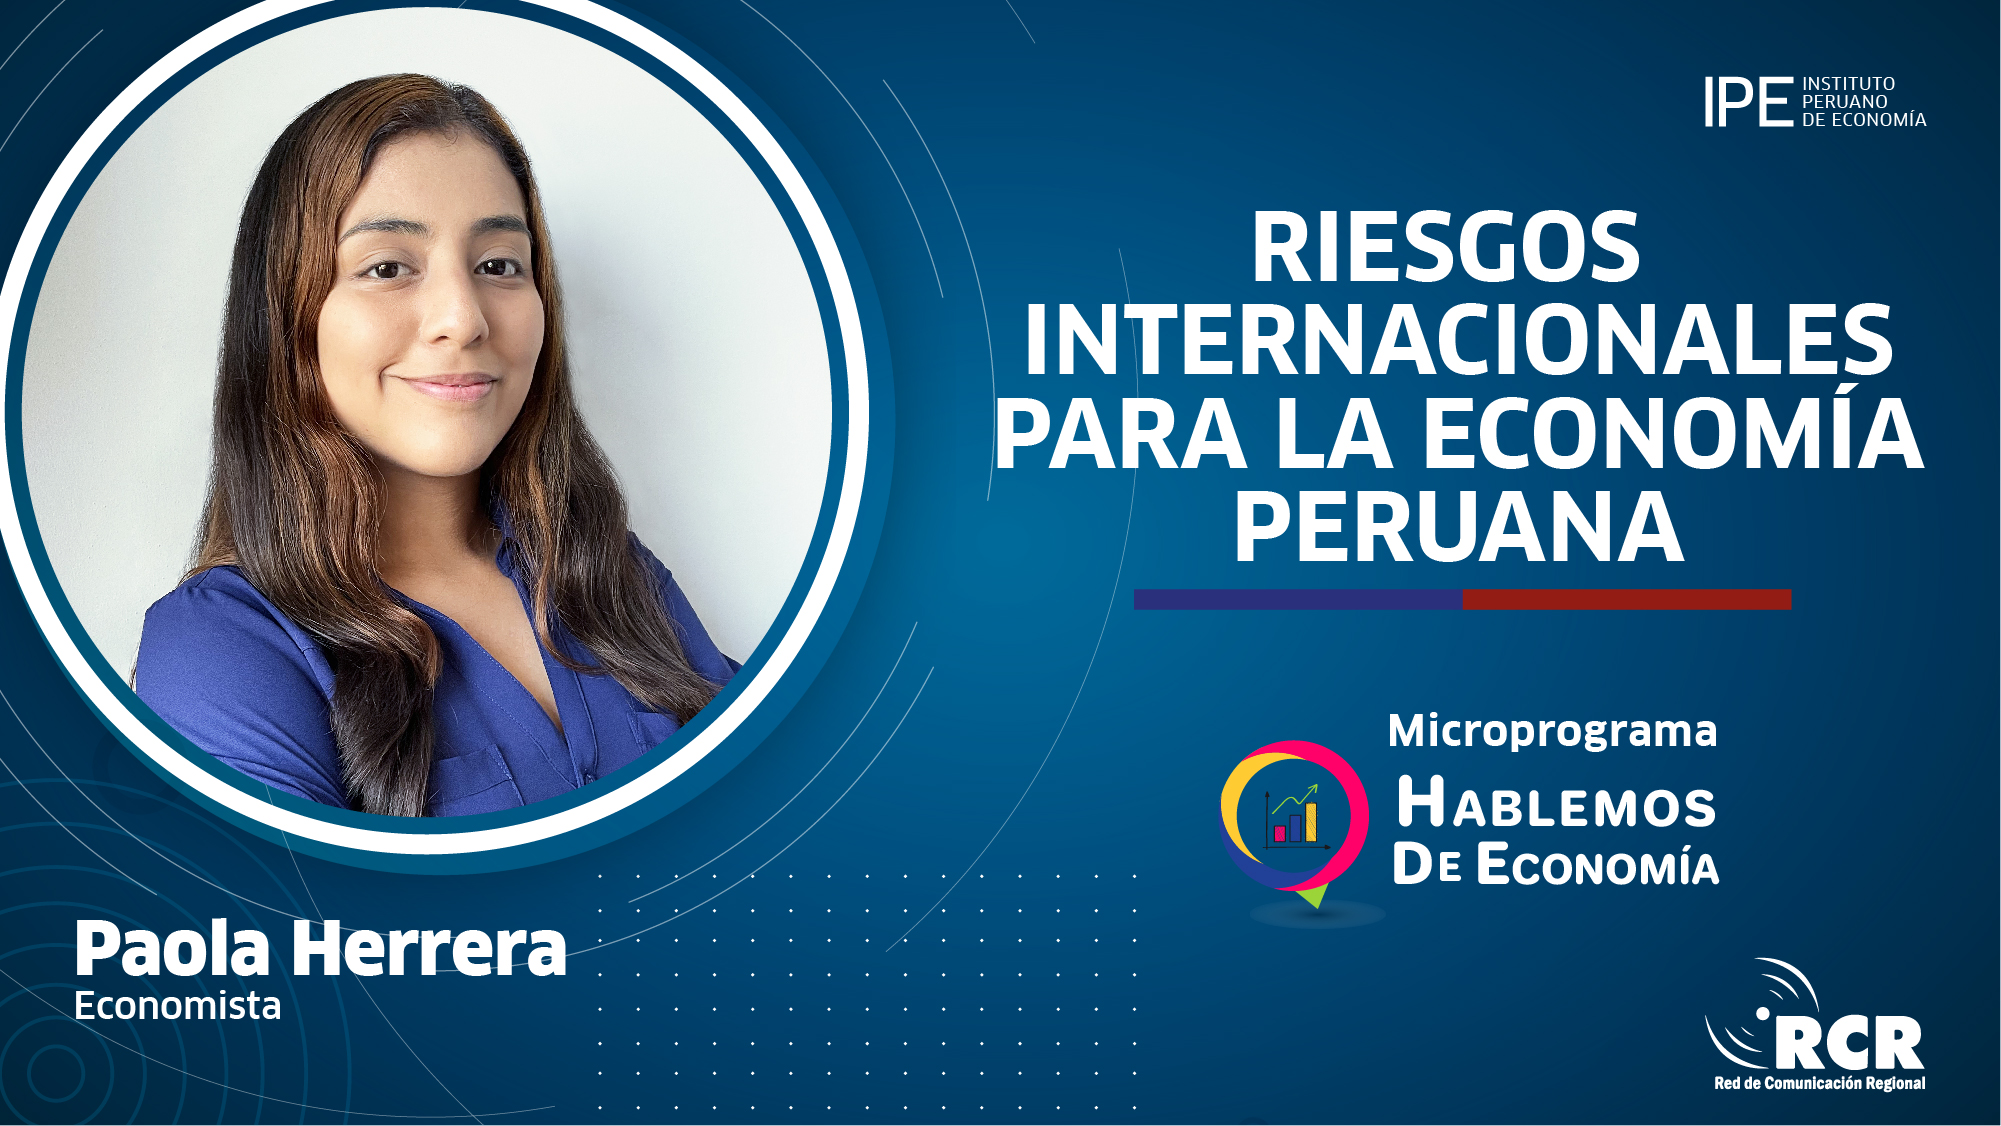 riesgos globales, crecimiento económico, Paola Herrera, RCR, economía peruana, Perú